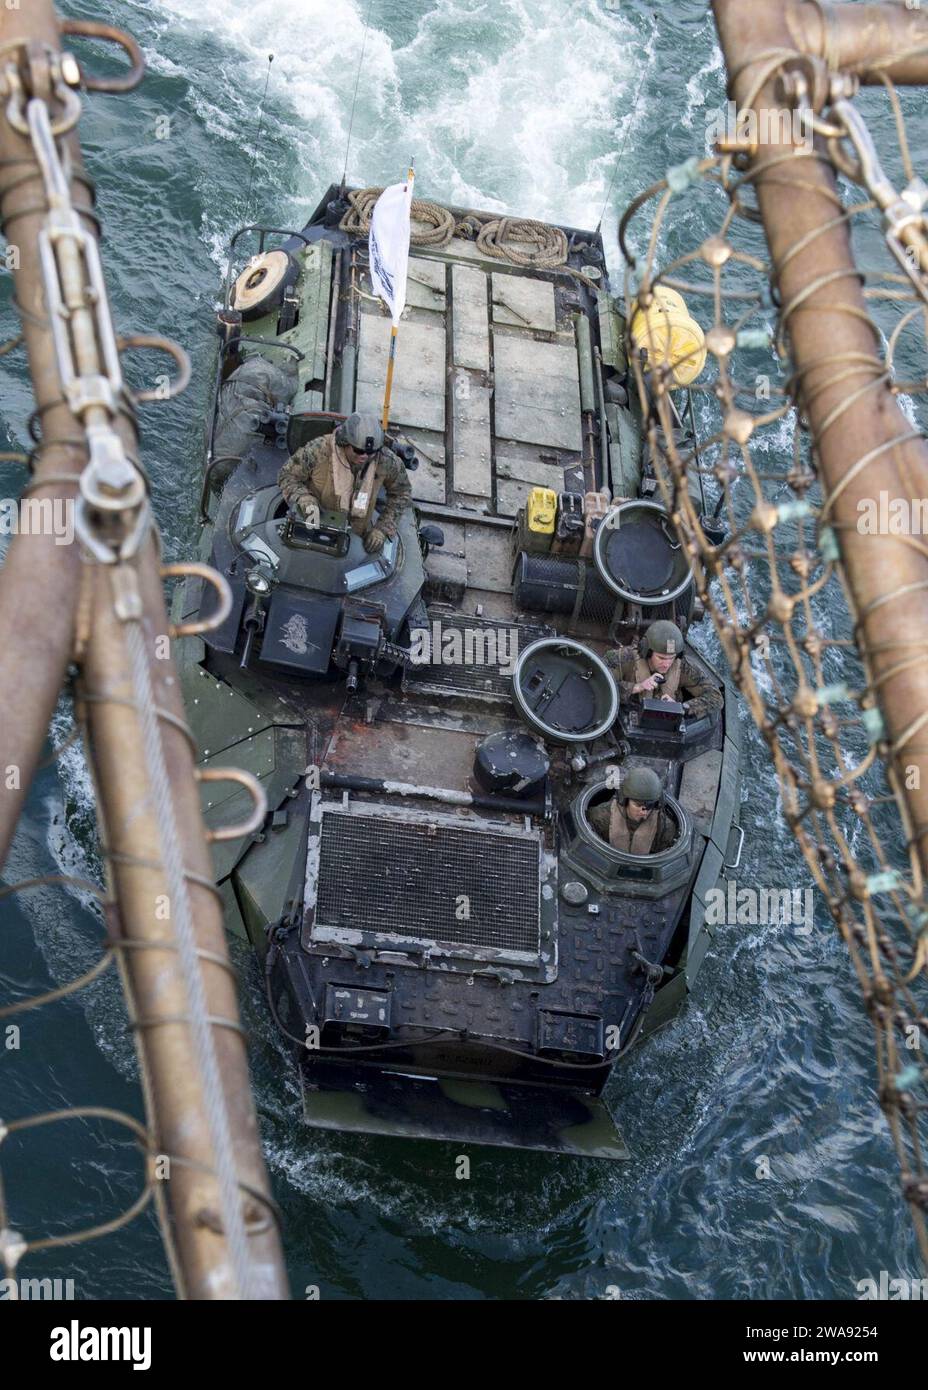 Forces militaires AMÉRICAINES. 180315PC620-0188 BLACK SEA (15 mars 2018) un véhicule amphibie d'assaut AAV-P7/A1, attaché à la 26th Marine Expeditionary Unit, embarque sur le pont du navire de débarquement de la classe Harpers Ferry USS Oak Hill (LSD 51) après l'exercice Spring Storm 2018, le 15 mars. Spring Storm est un exercice dirigé par les Roumains en mer Noire pour améliorer les opérations amphibies et l'interopérabilité du personnel entre les forces navales roumaines et américaines. Oak Hill, dont le siège se trouve à Virginia Beach, en Virginie, mène des opérations navales dans la zone d'opérations de la 6e flotte américaine. (Photo de l'US Navy par Mass Comm Banque D'Images